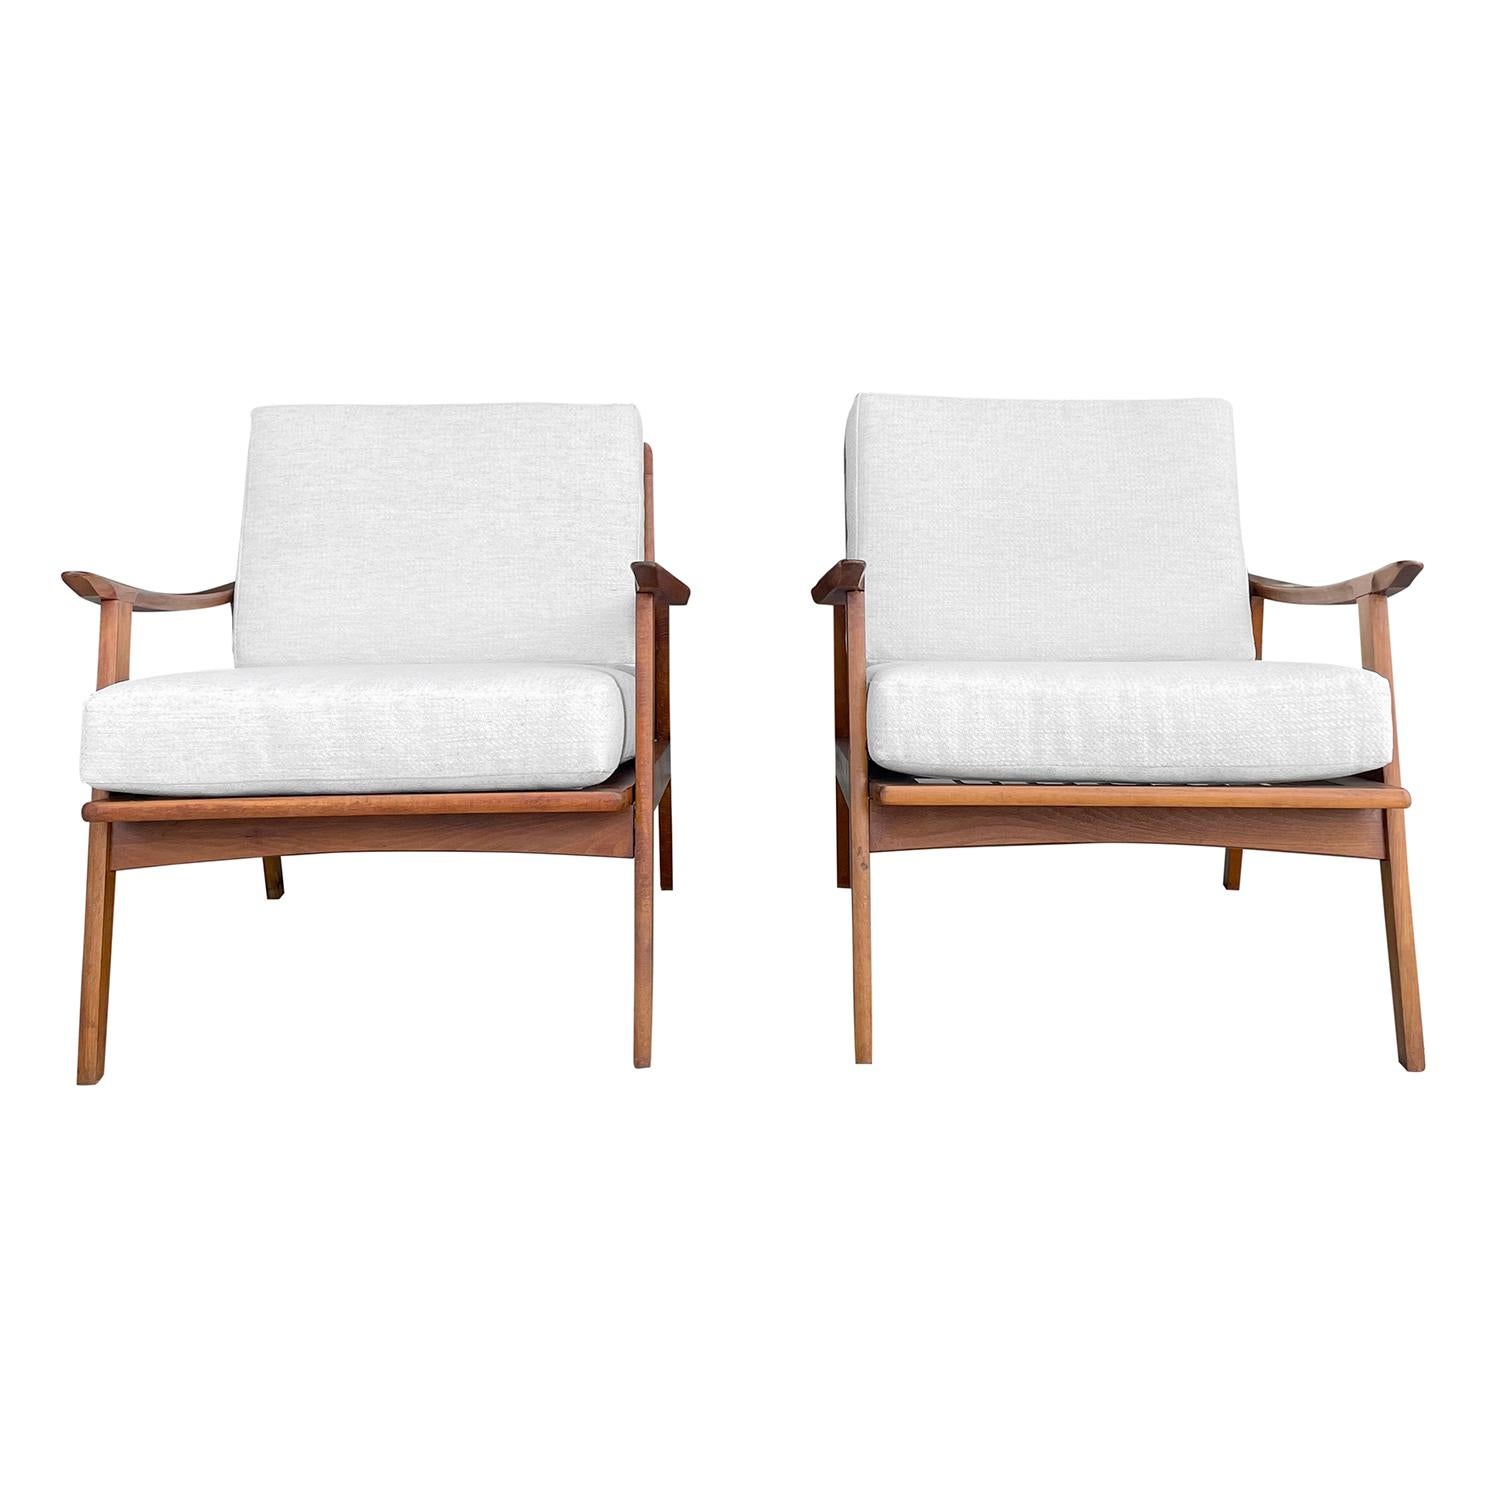 Ein Vintage Mid-Century modernes dänisches Paar offener Sessel aus handgefertigtem poliertem Teakholz, entworfen von Kai Kristiansen, in gutem Zustand. Die Rückenlehne der skandinavischen Loungesessel mit niedriger Rückenlehne ist spindelförmig und